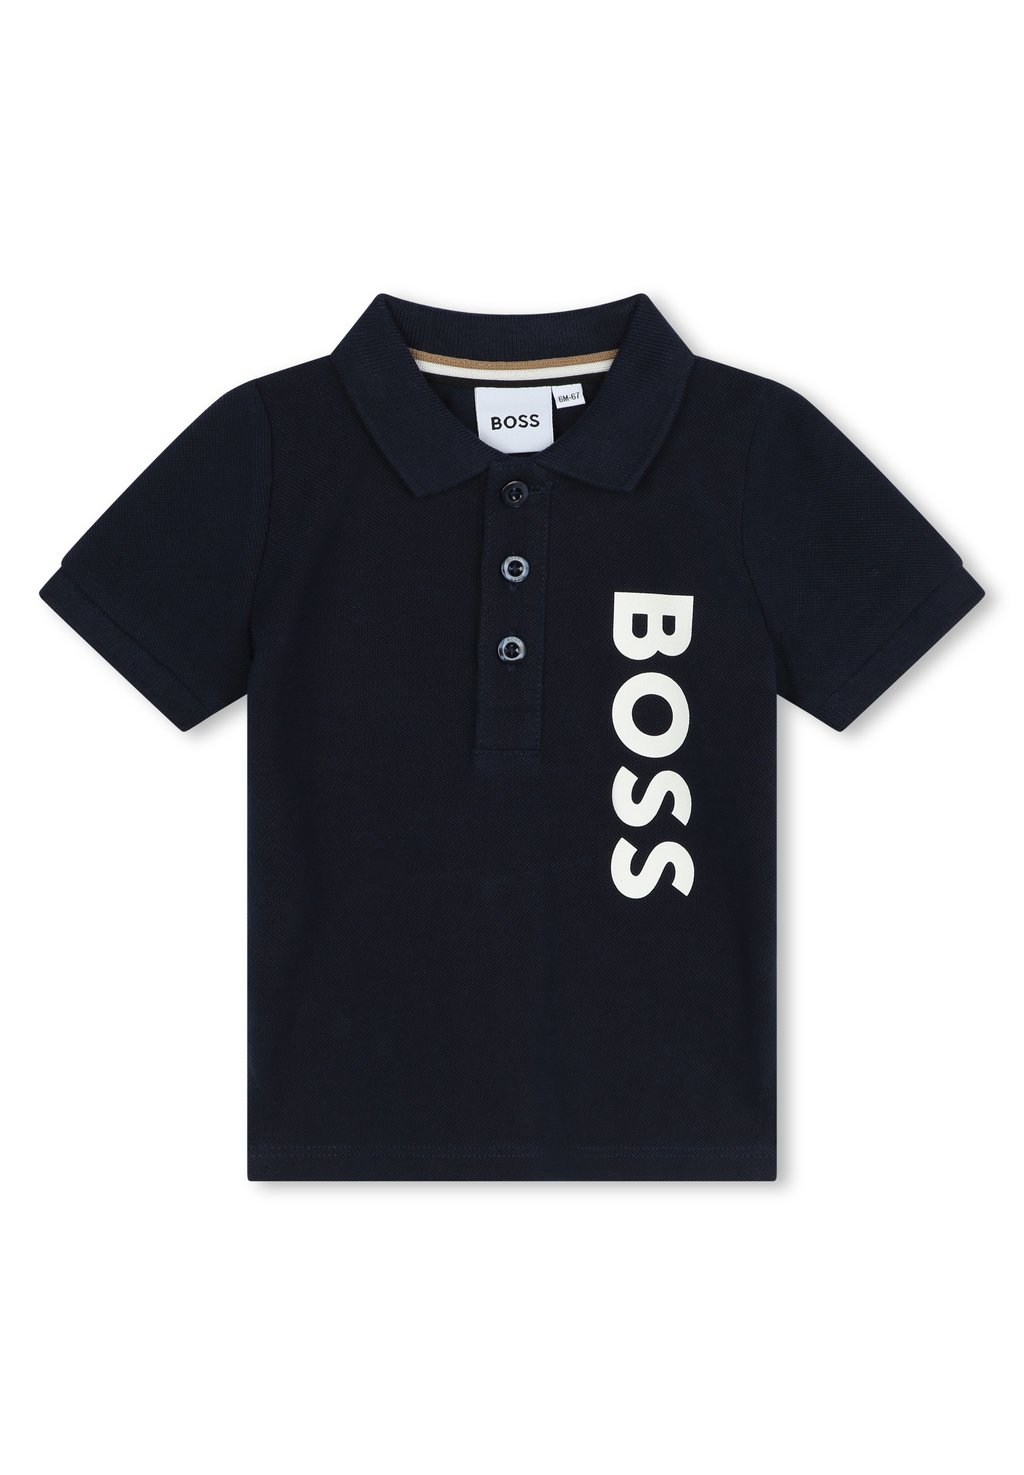 Рубашка-поло BABY SHORT SLEEVE BOSS Kidswear, цвет navy рубашка поло short sleeve boss kidswear цвет white